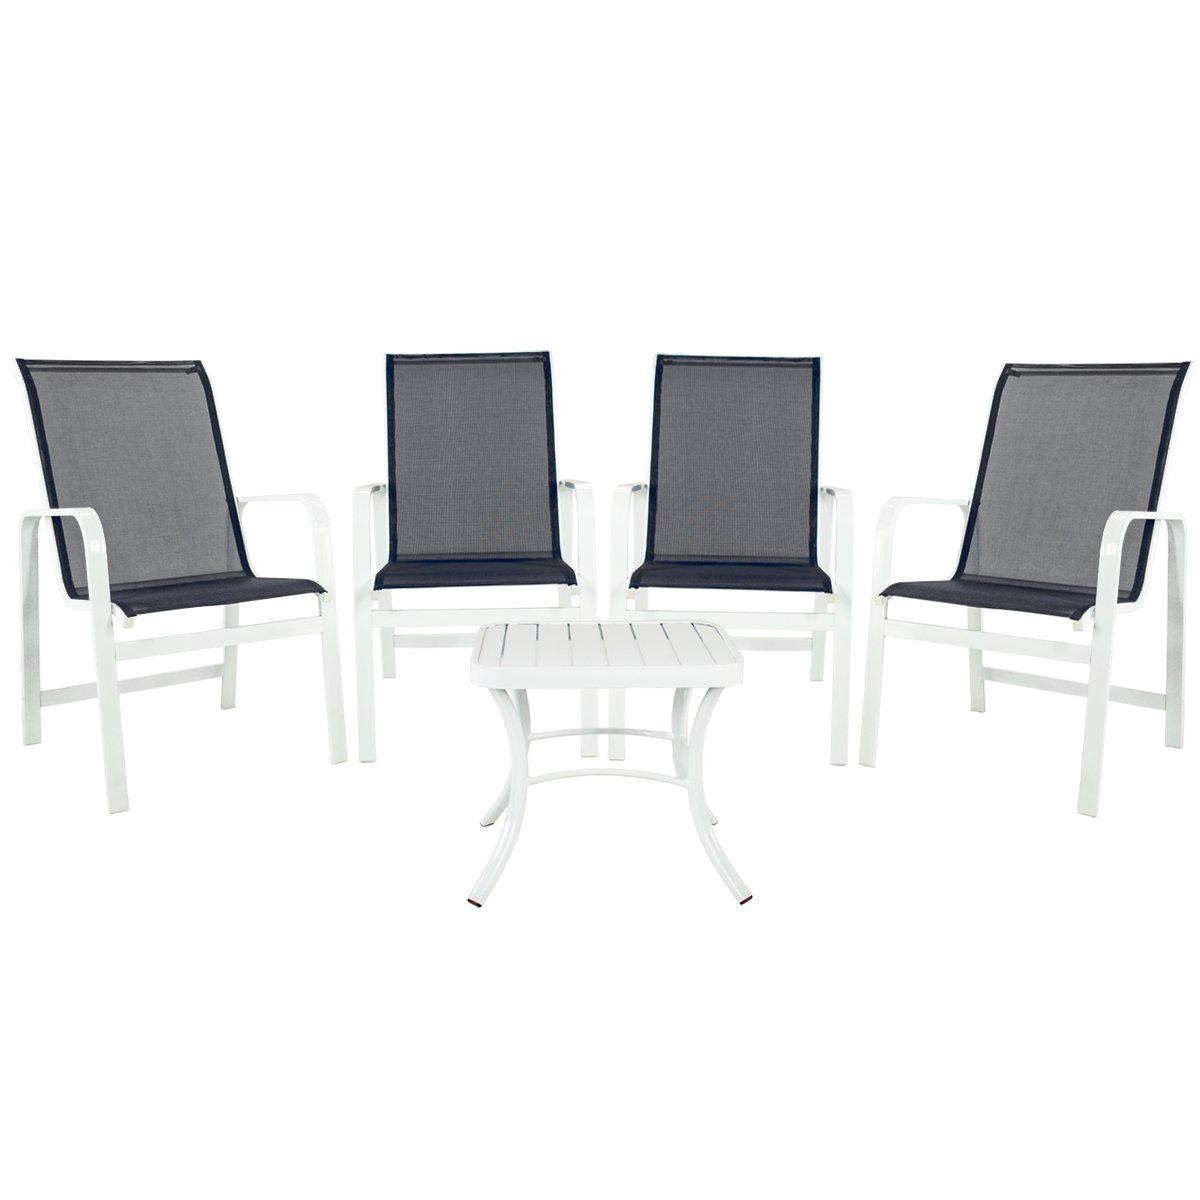 Conjunto 4 Cadeiras Classic em Tela + 1 Mesa Baixa em Alumínio Pintado - 1